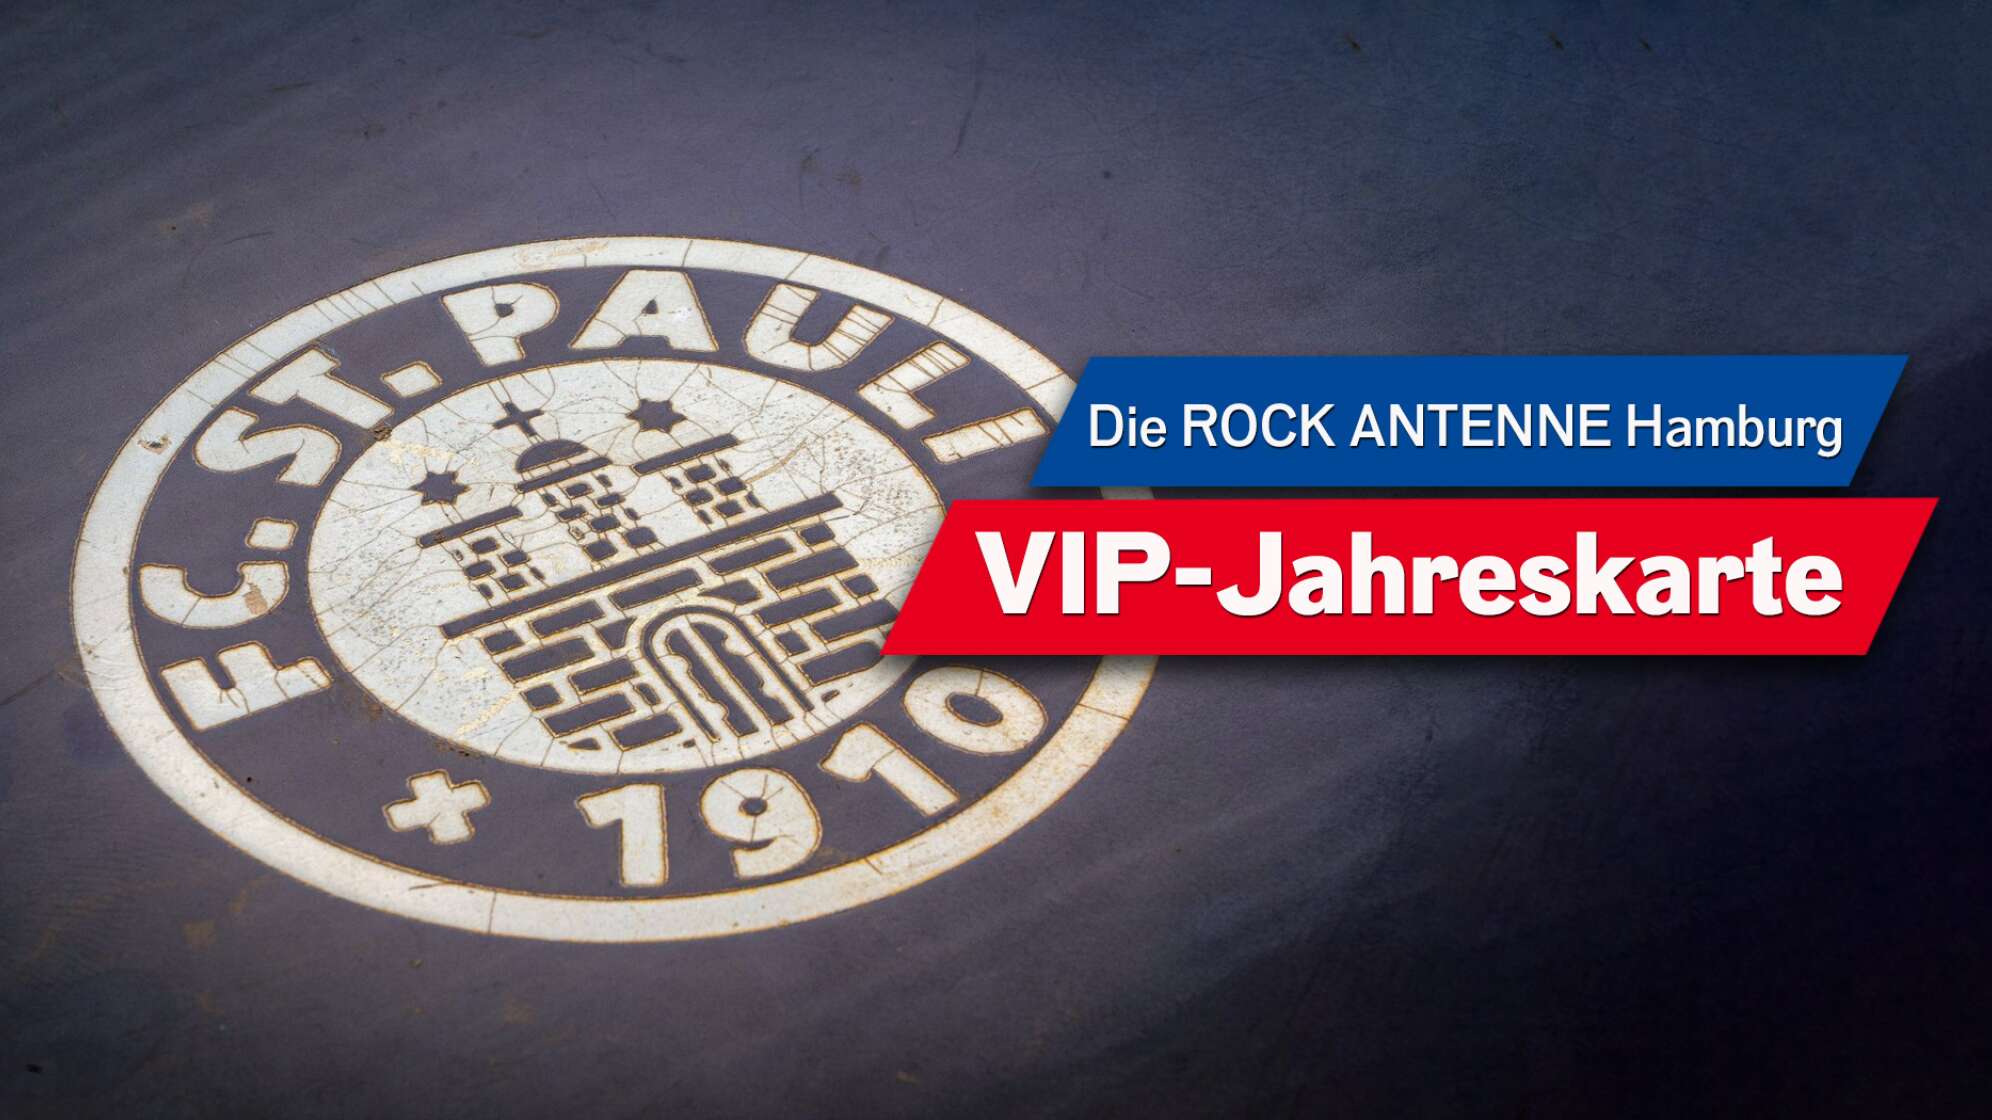 Das Logo des FC St. Pauli mit der Aufschrift "DIE ROCK ANTENNE Hamburg VIP JAHRESKARTE"